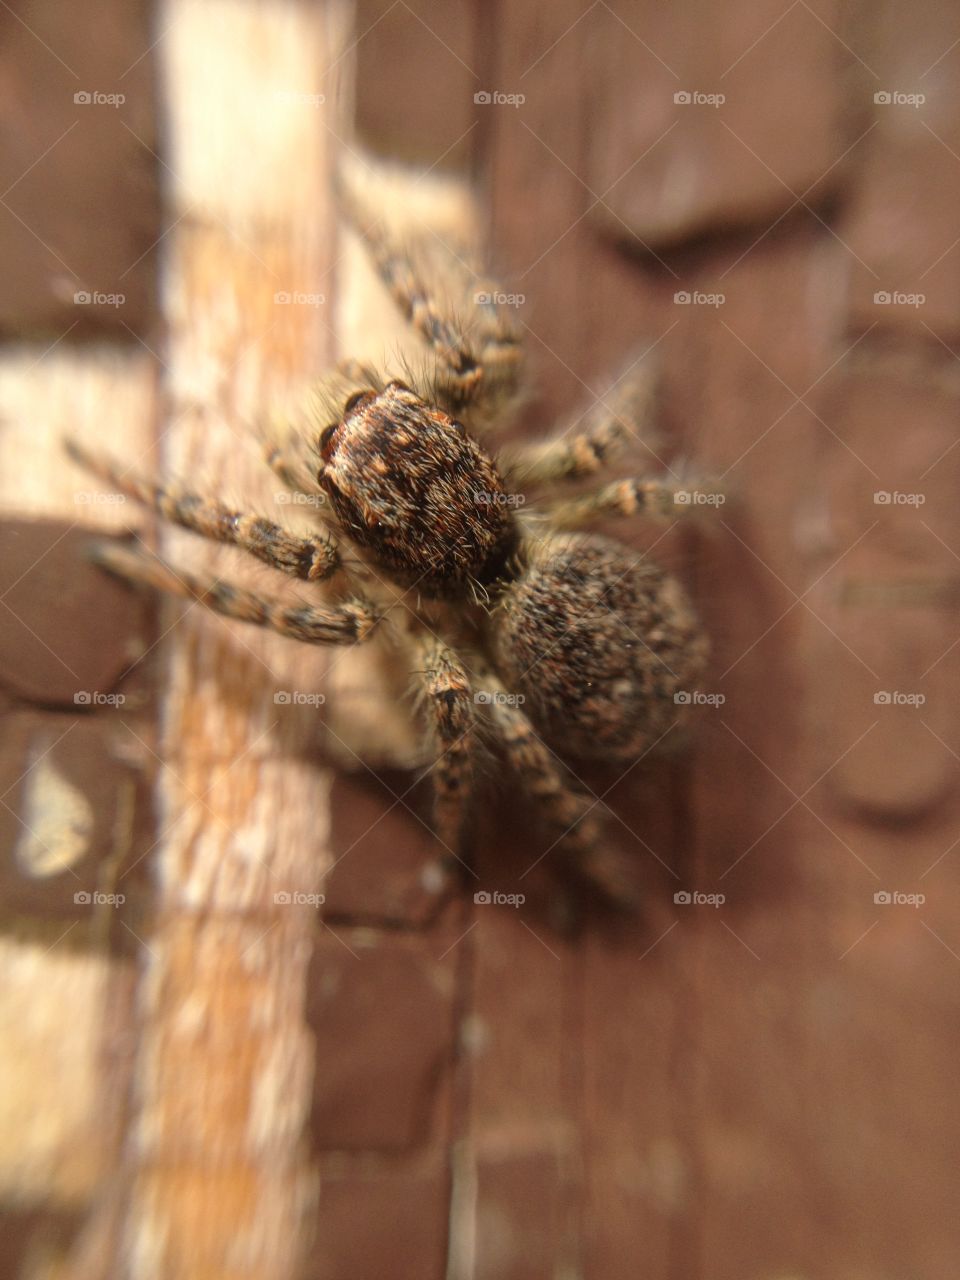 Biggy spider. Biggy spider on the ground